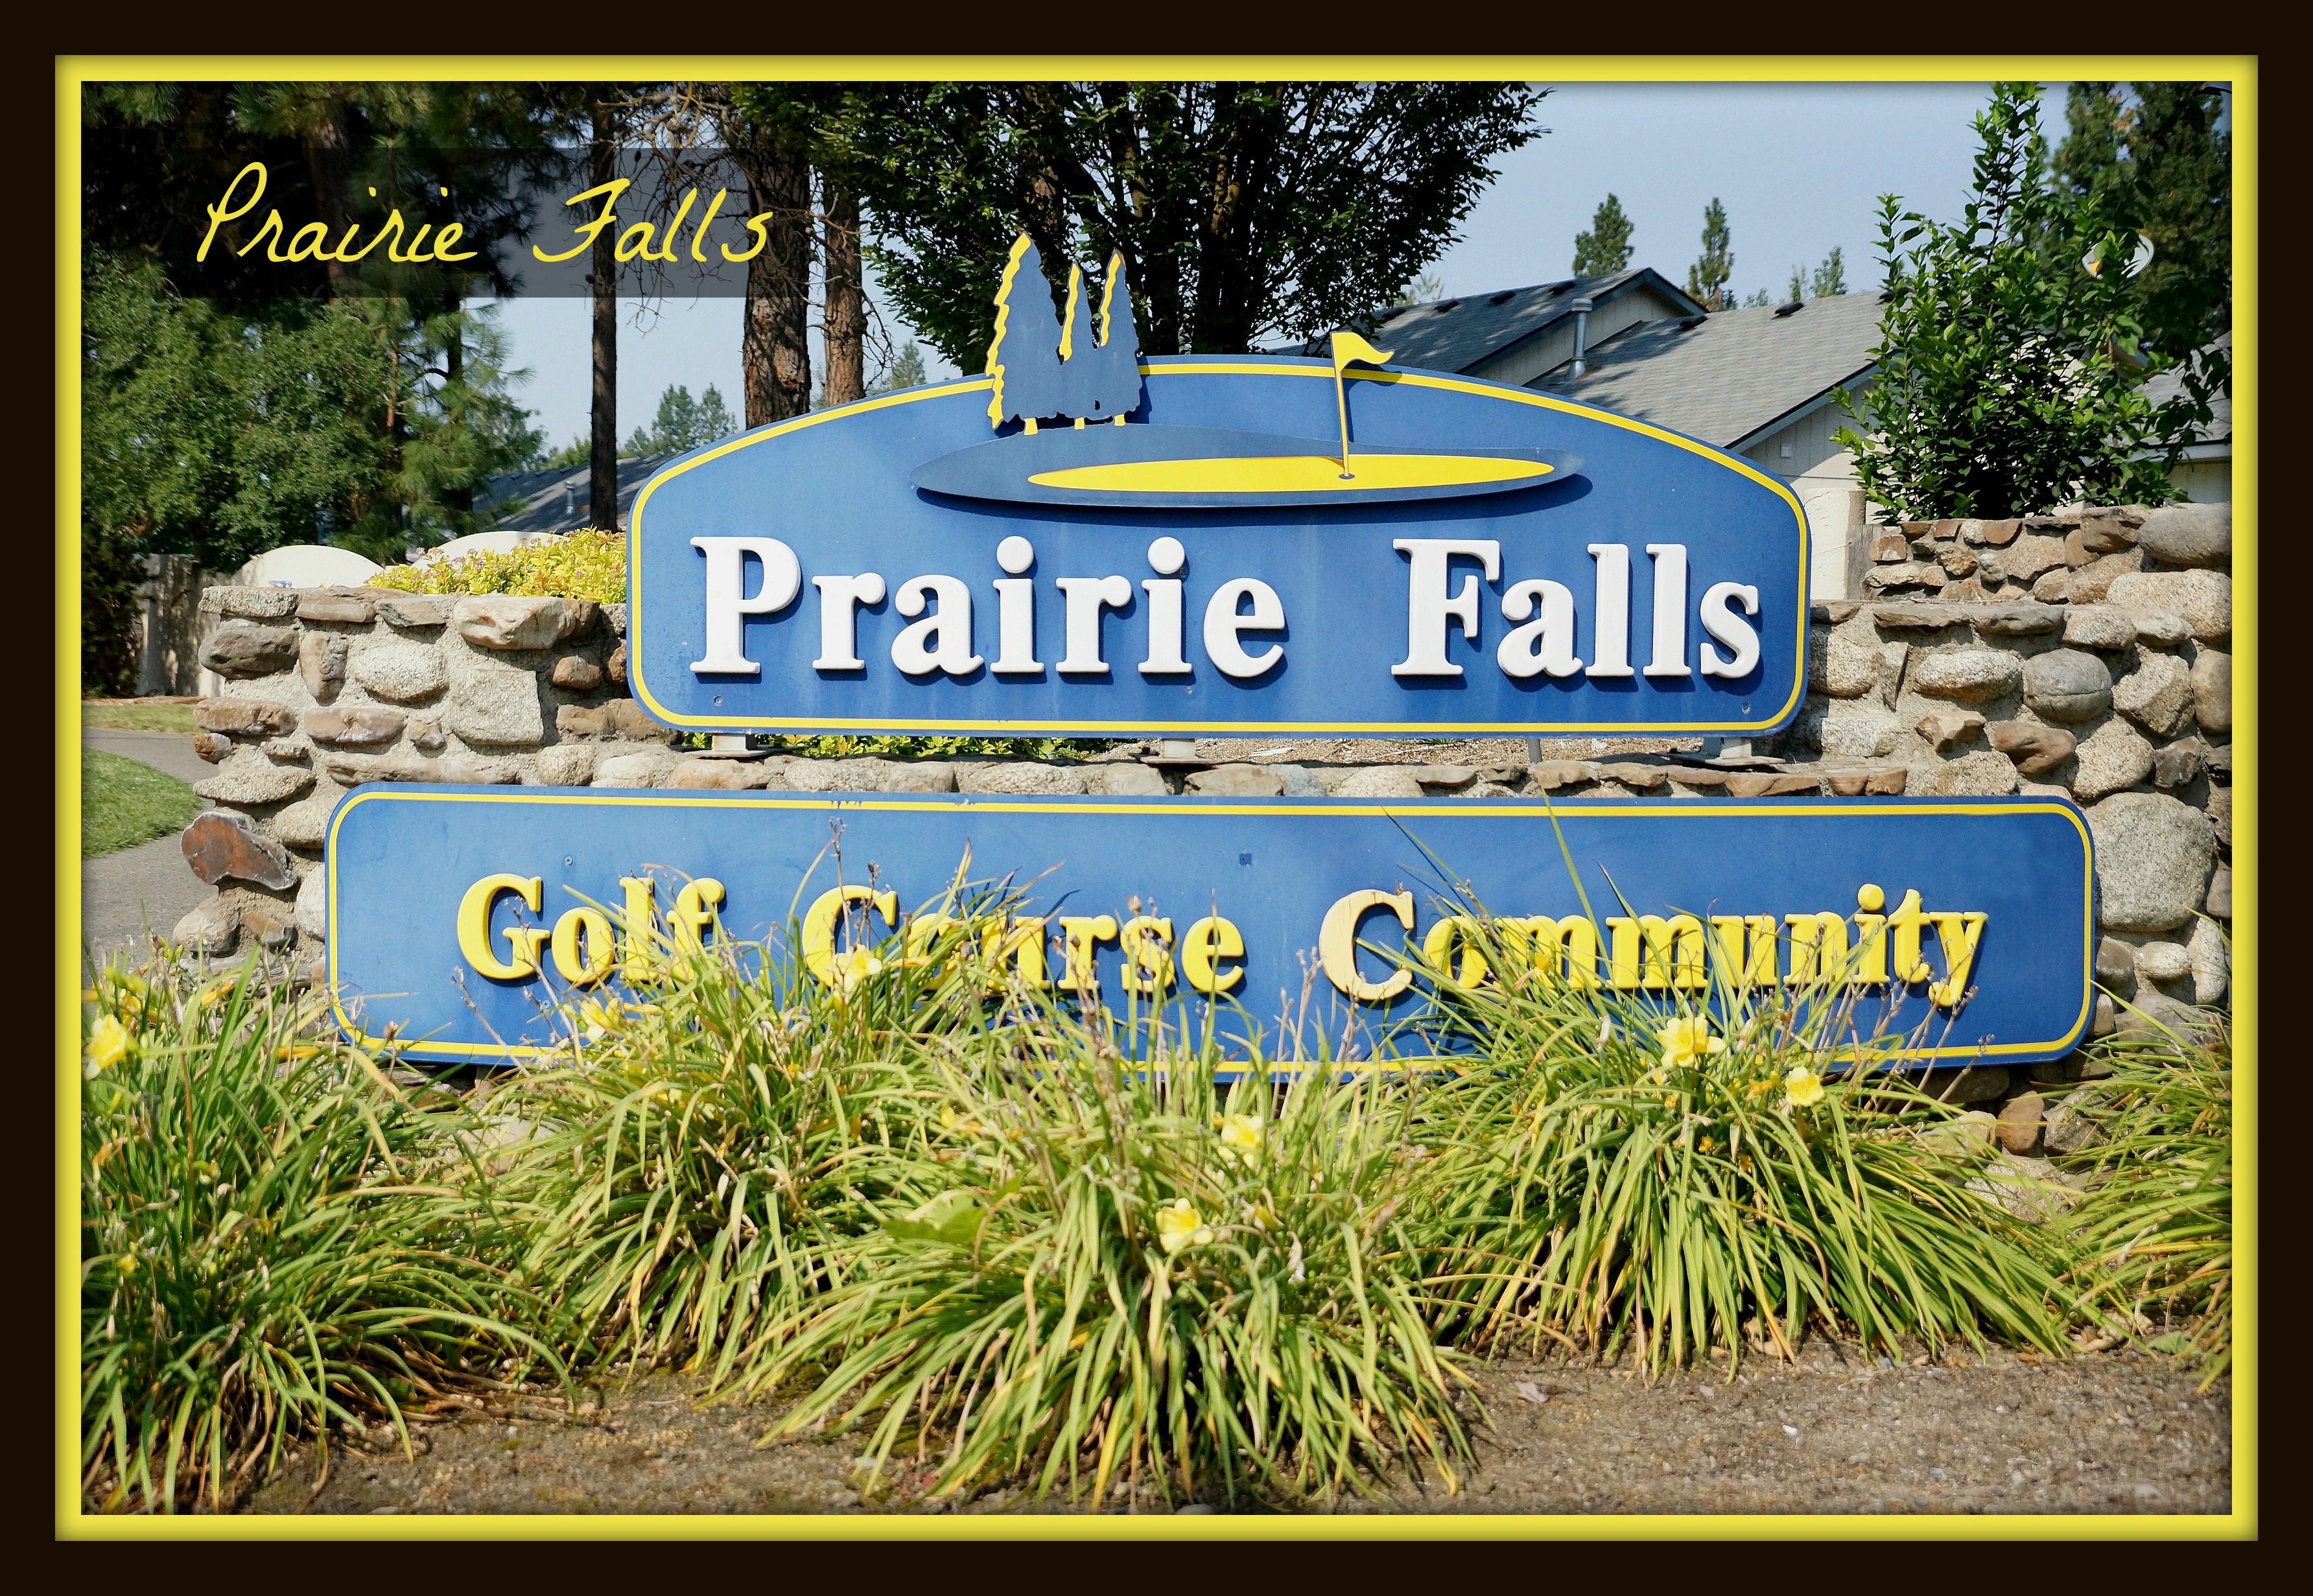 Prairie Falls Post Falls Idaho 83854 - Idaho Real Homes LLC